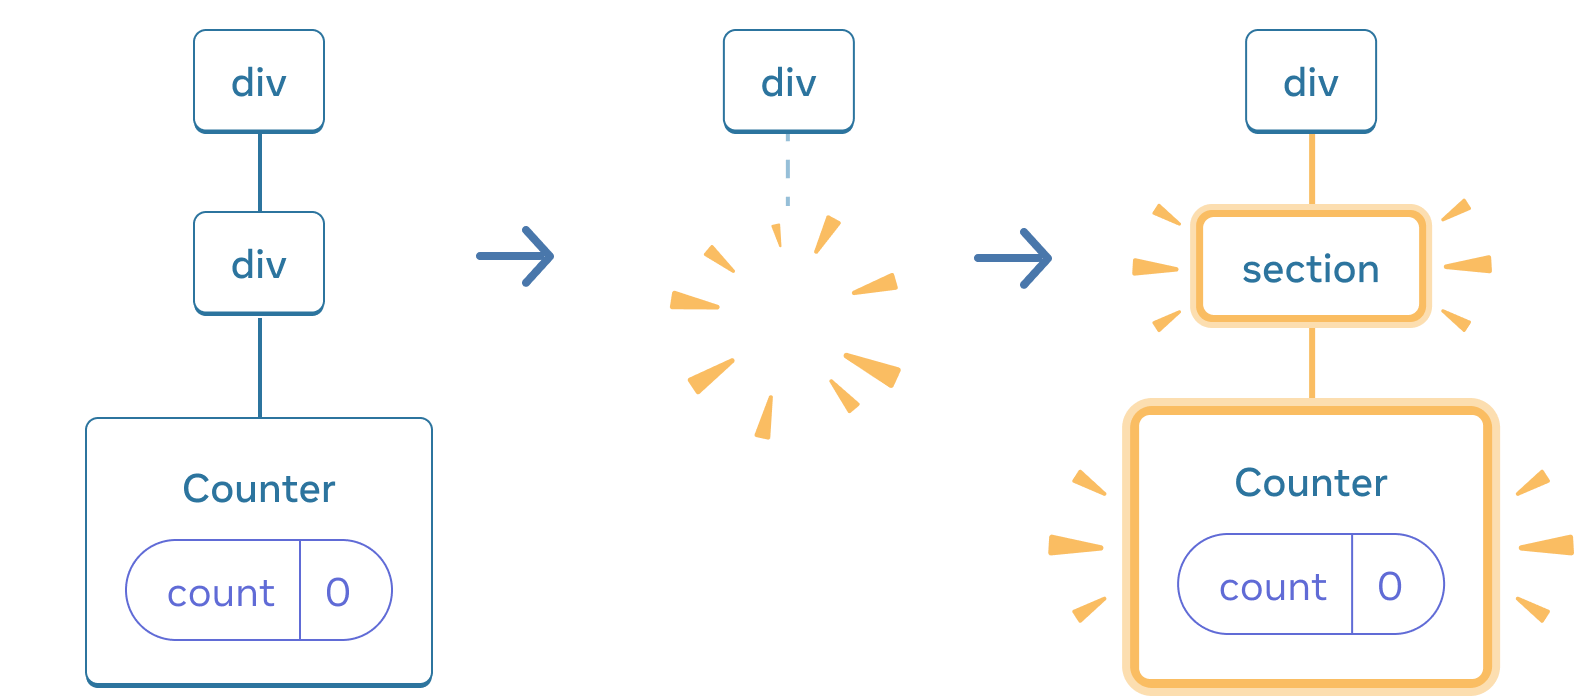 矢印で遷移する 3 セクションから構成される図。最初のセクションには React コンポーネントとして 'div' とその子である別の 'div' がある。さらにその子に 'Counter' があり、'count' の state ボックスは 0 となっている。中央のセクションにも親の 'div' があるが、子が消失している。最後のセクションにも 'div' があり、今度は 'section' が新しい子となってハイライトされている。さらにその子に 'Counter' があって黄色でハイライトされており、その 'count' の state ボックスは 0 となっている。